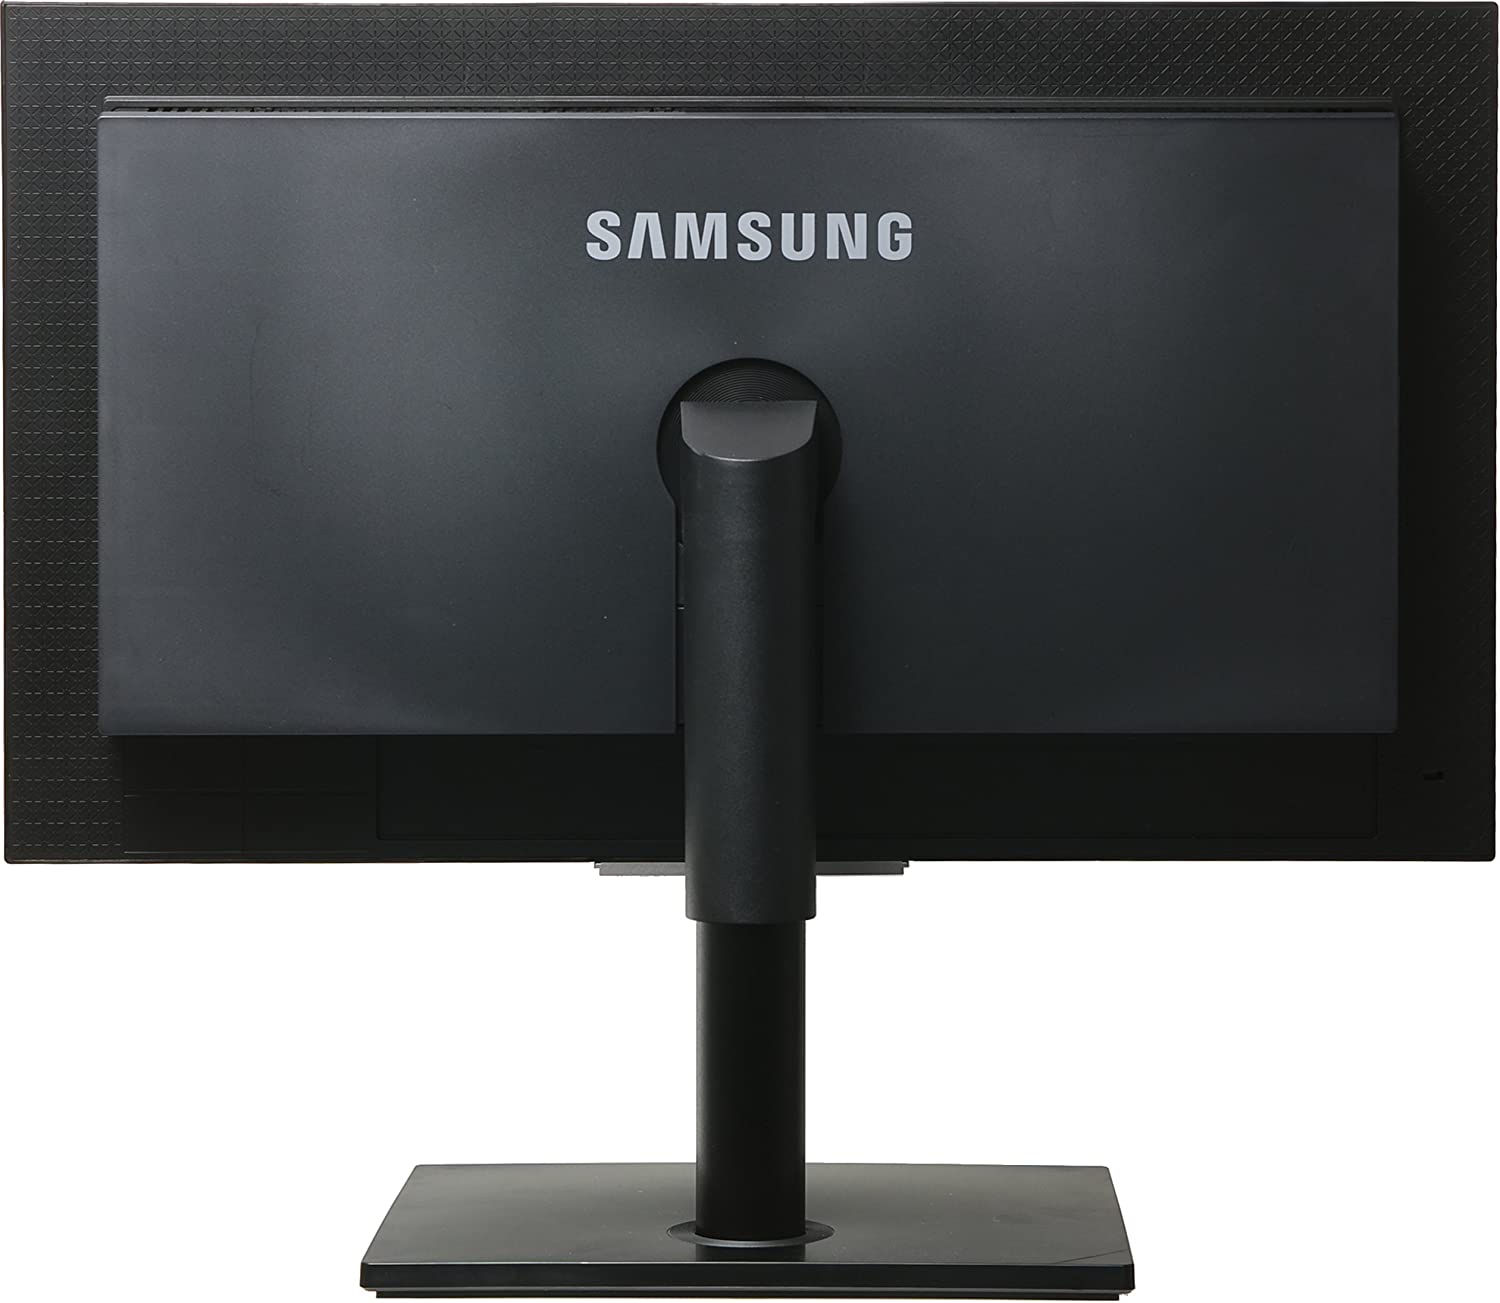 Samsung Syncmaster NC240 Monitor 24 Zoll 1920 x 1080 Pixel Full HD Helligkeit 300 cd/m² Reaktionszeit 5 ms Lautsprecher und USB-Hub